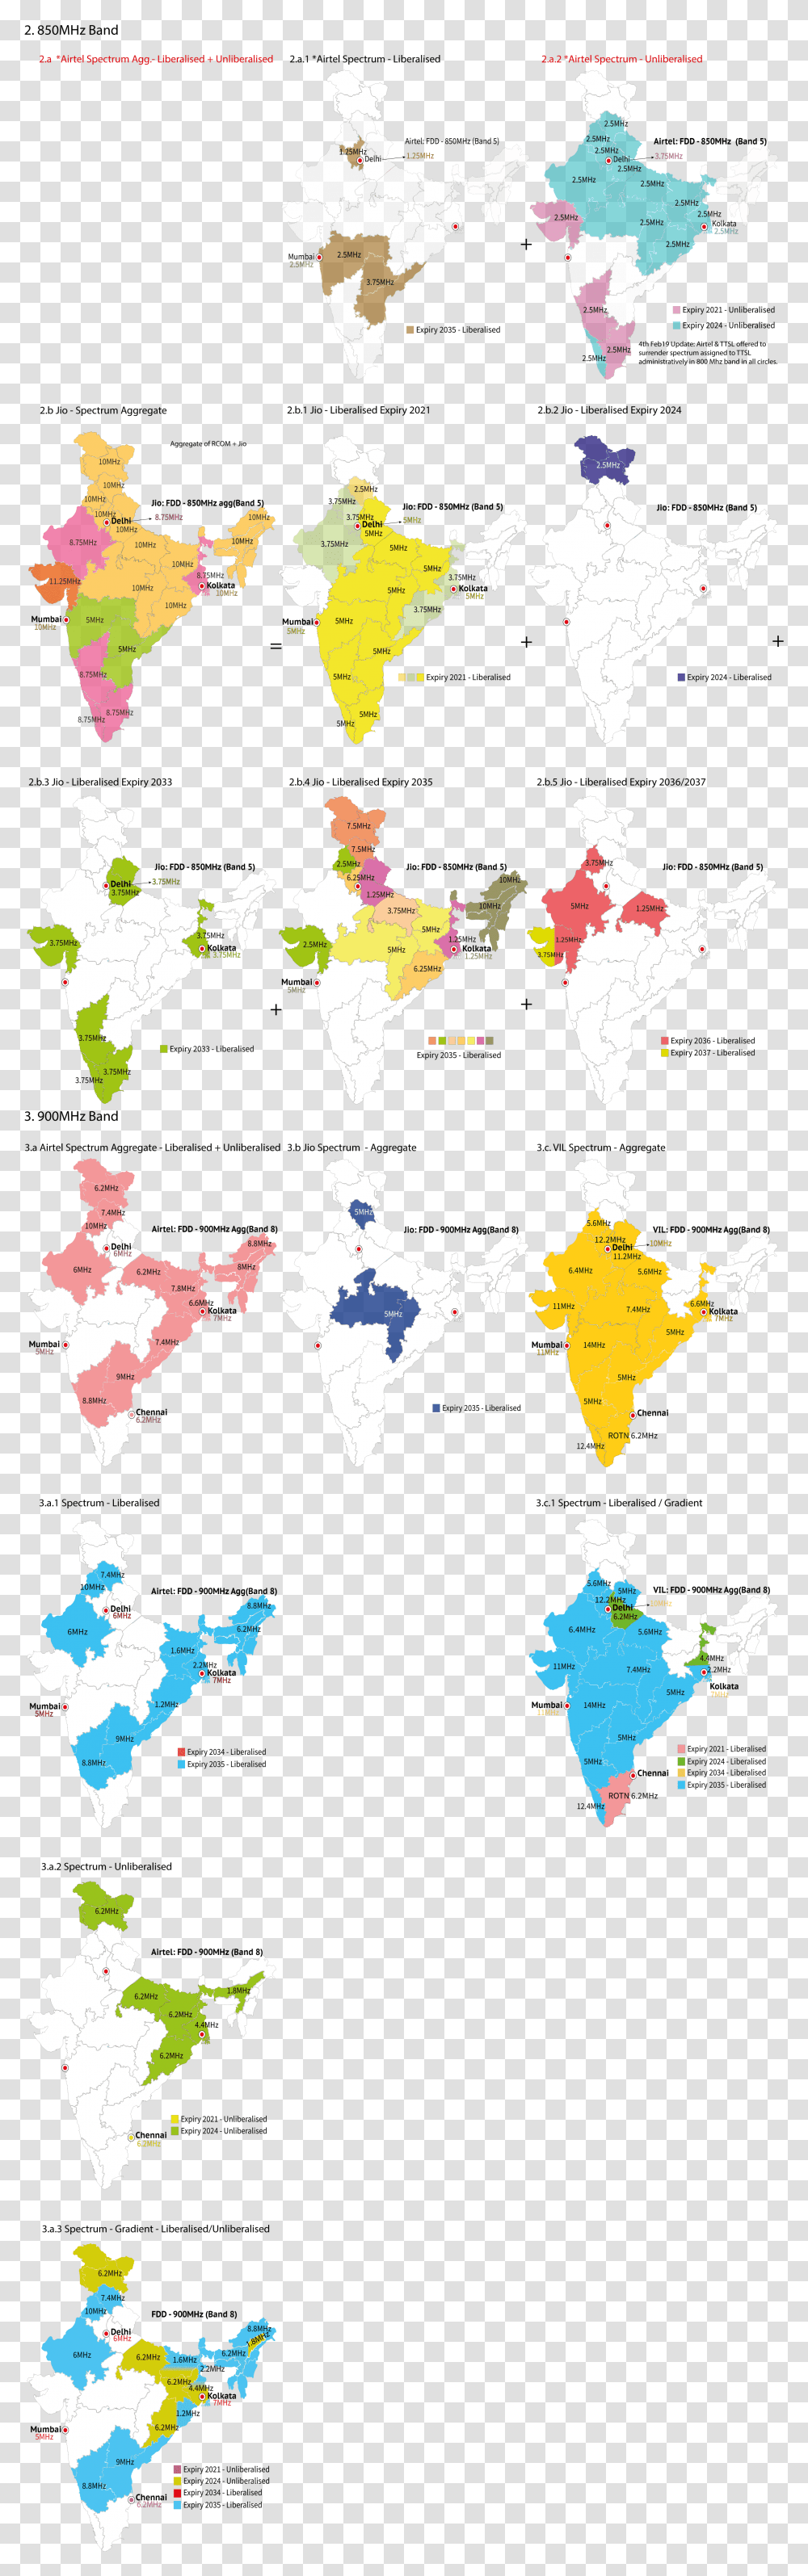 Spectrum Map India 2 Atlas, Diagram, Plot Transparent Png